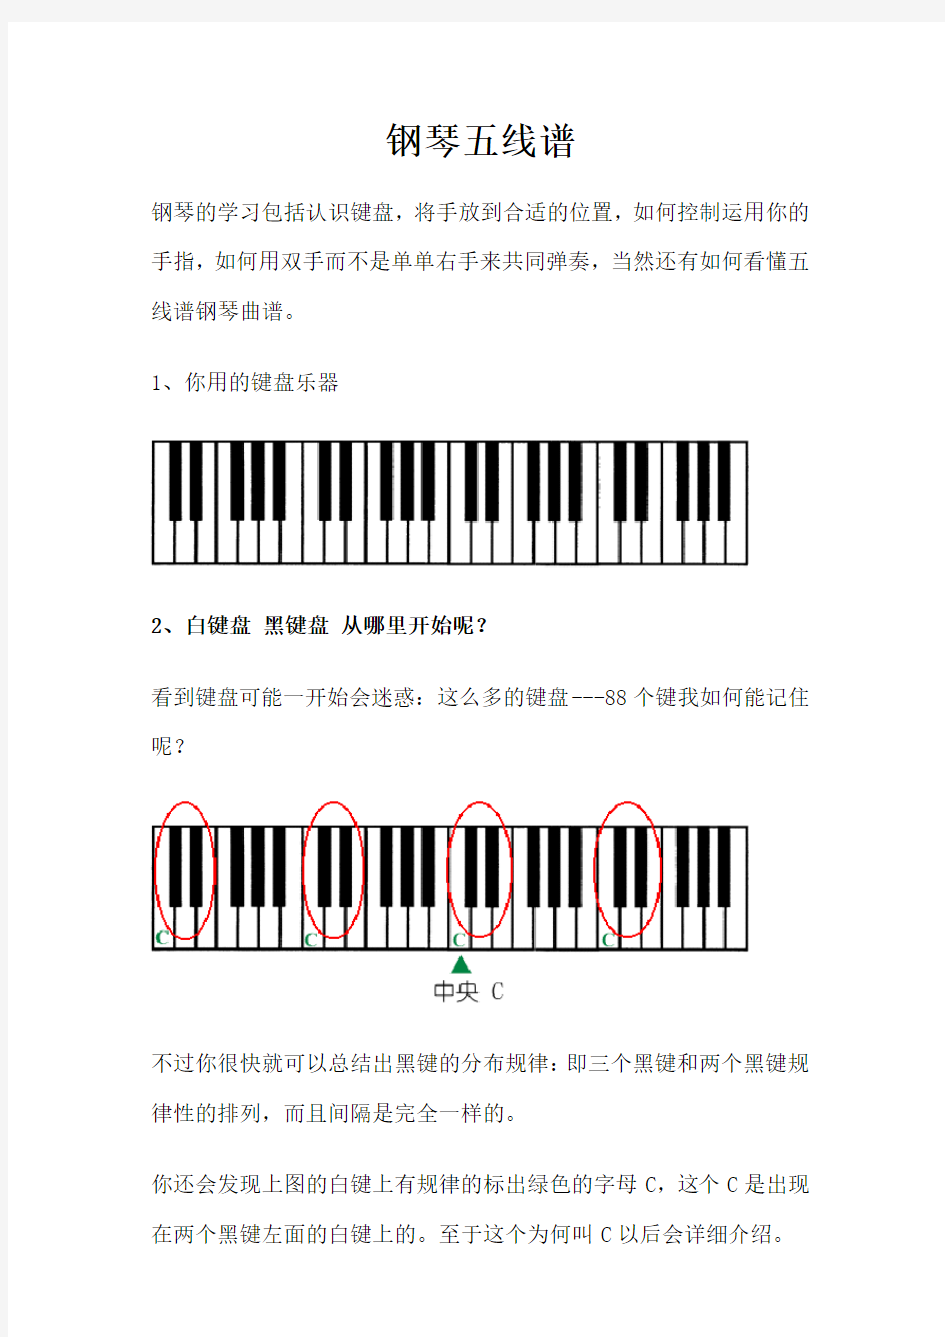 三分钟学会看键盘教你看懂钢琴五线谱